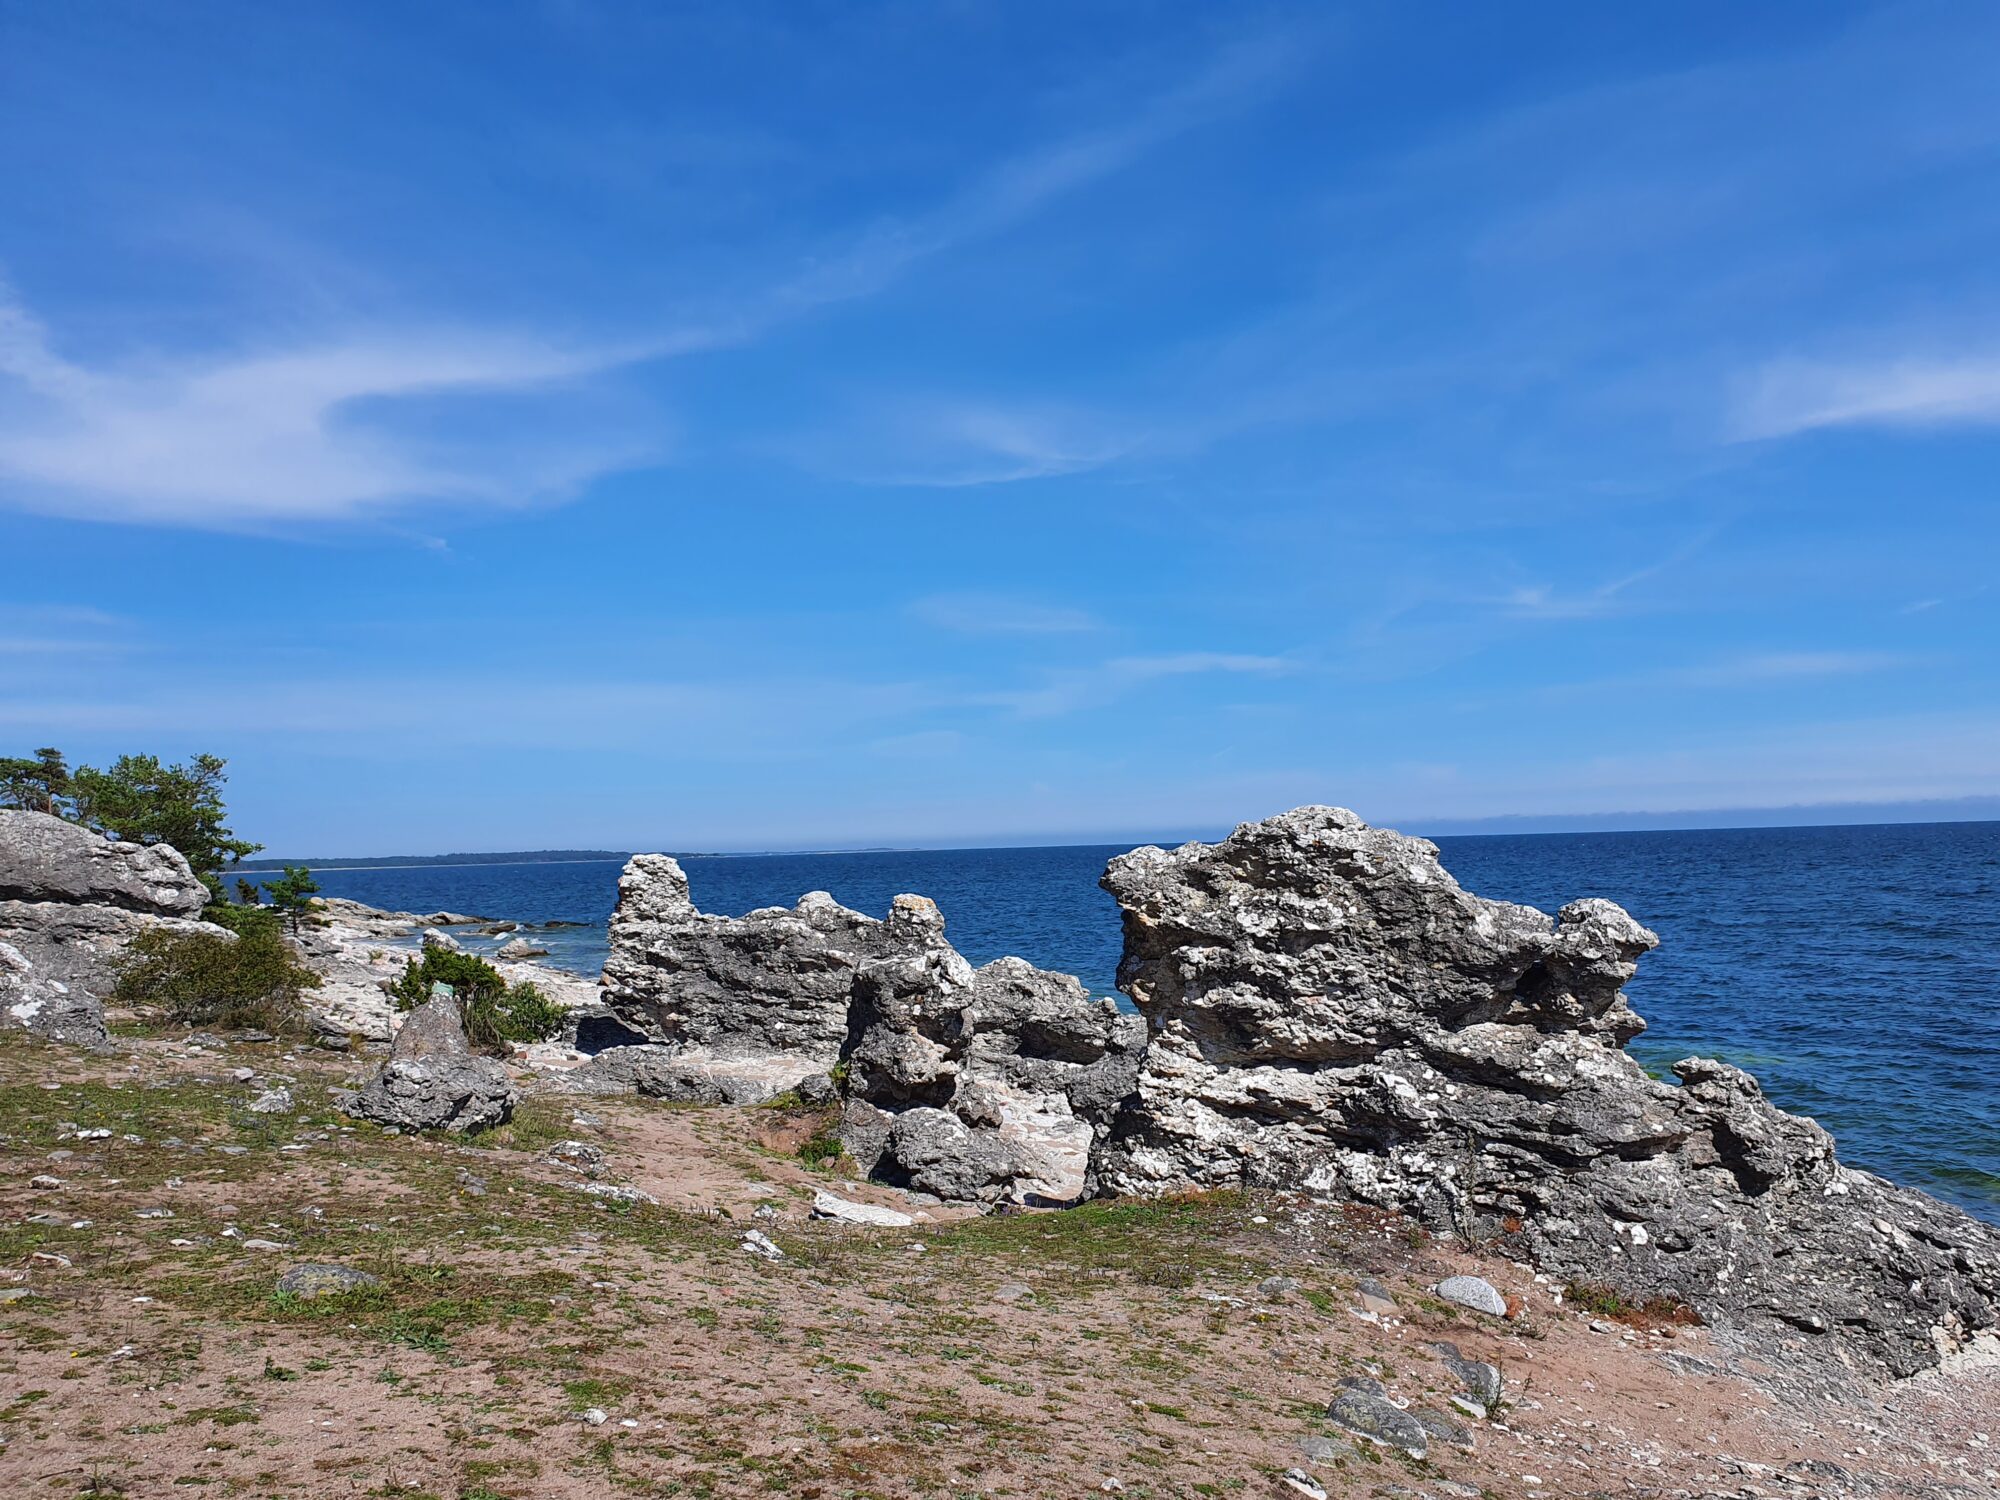 Raukar auf Gotland